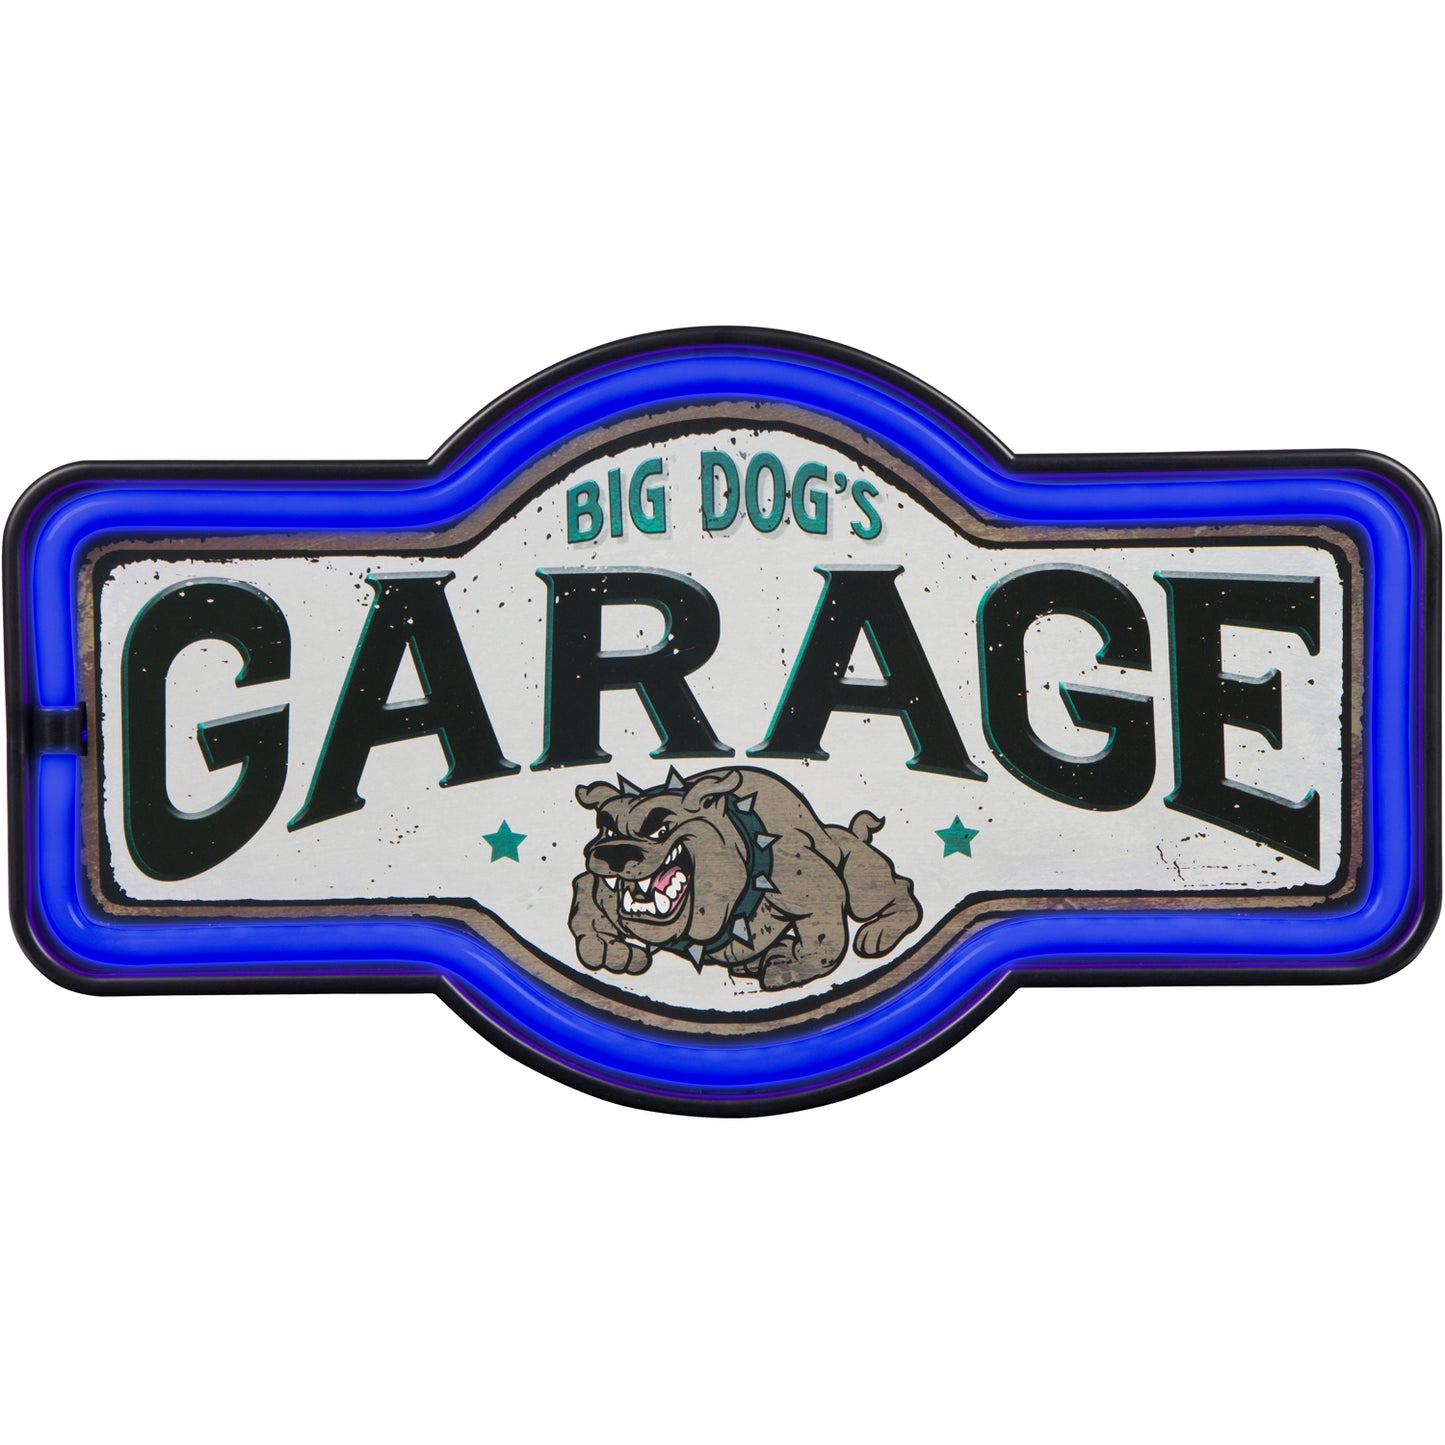 Big Dog's Garage LED Neon Sign